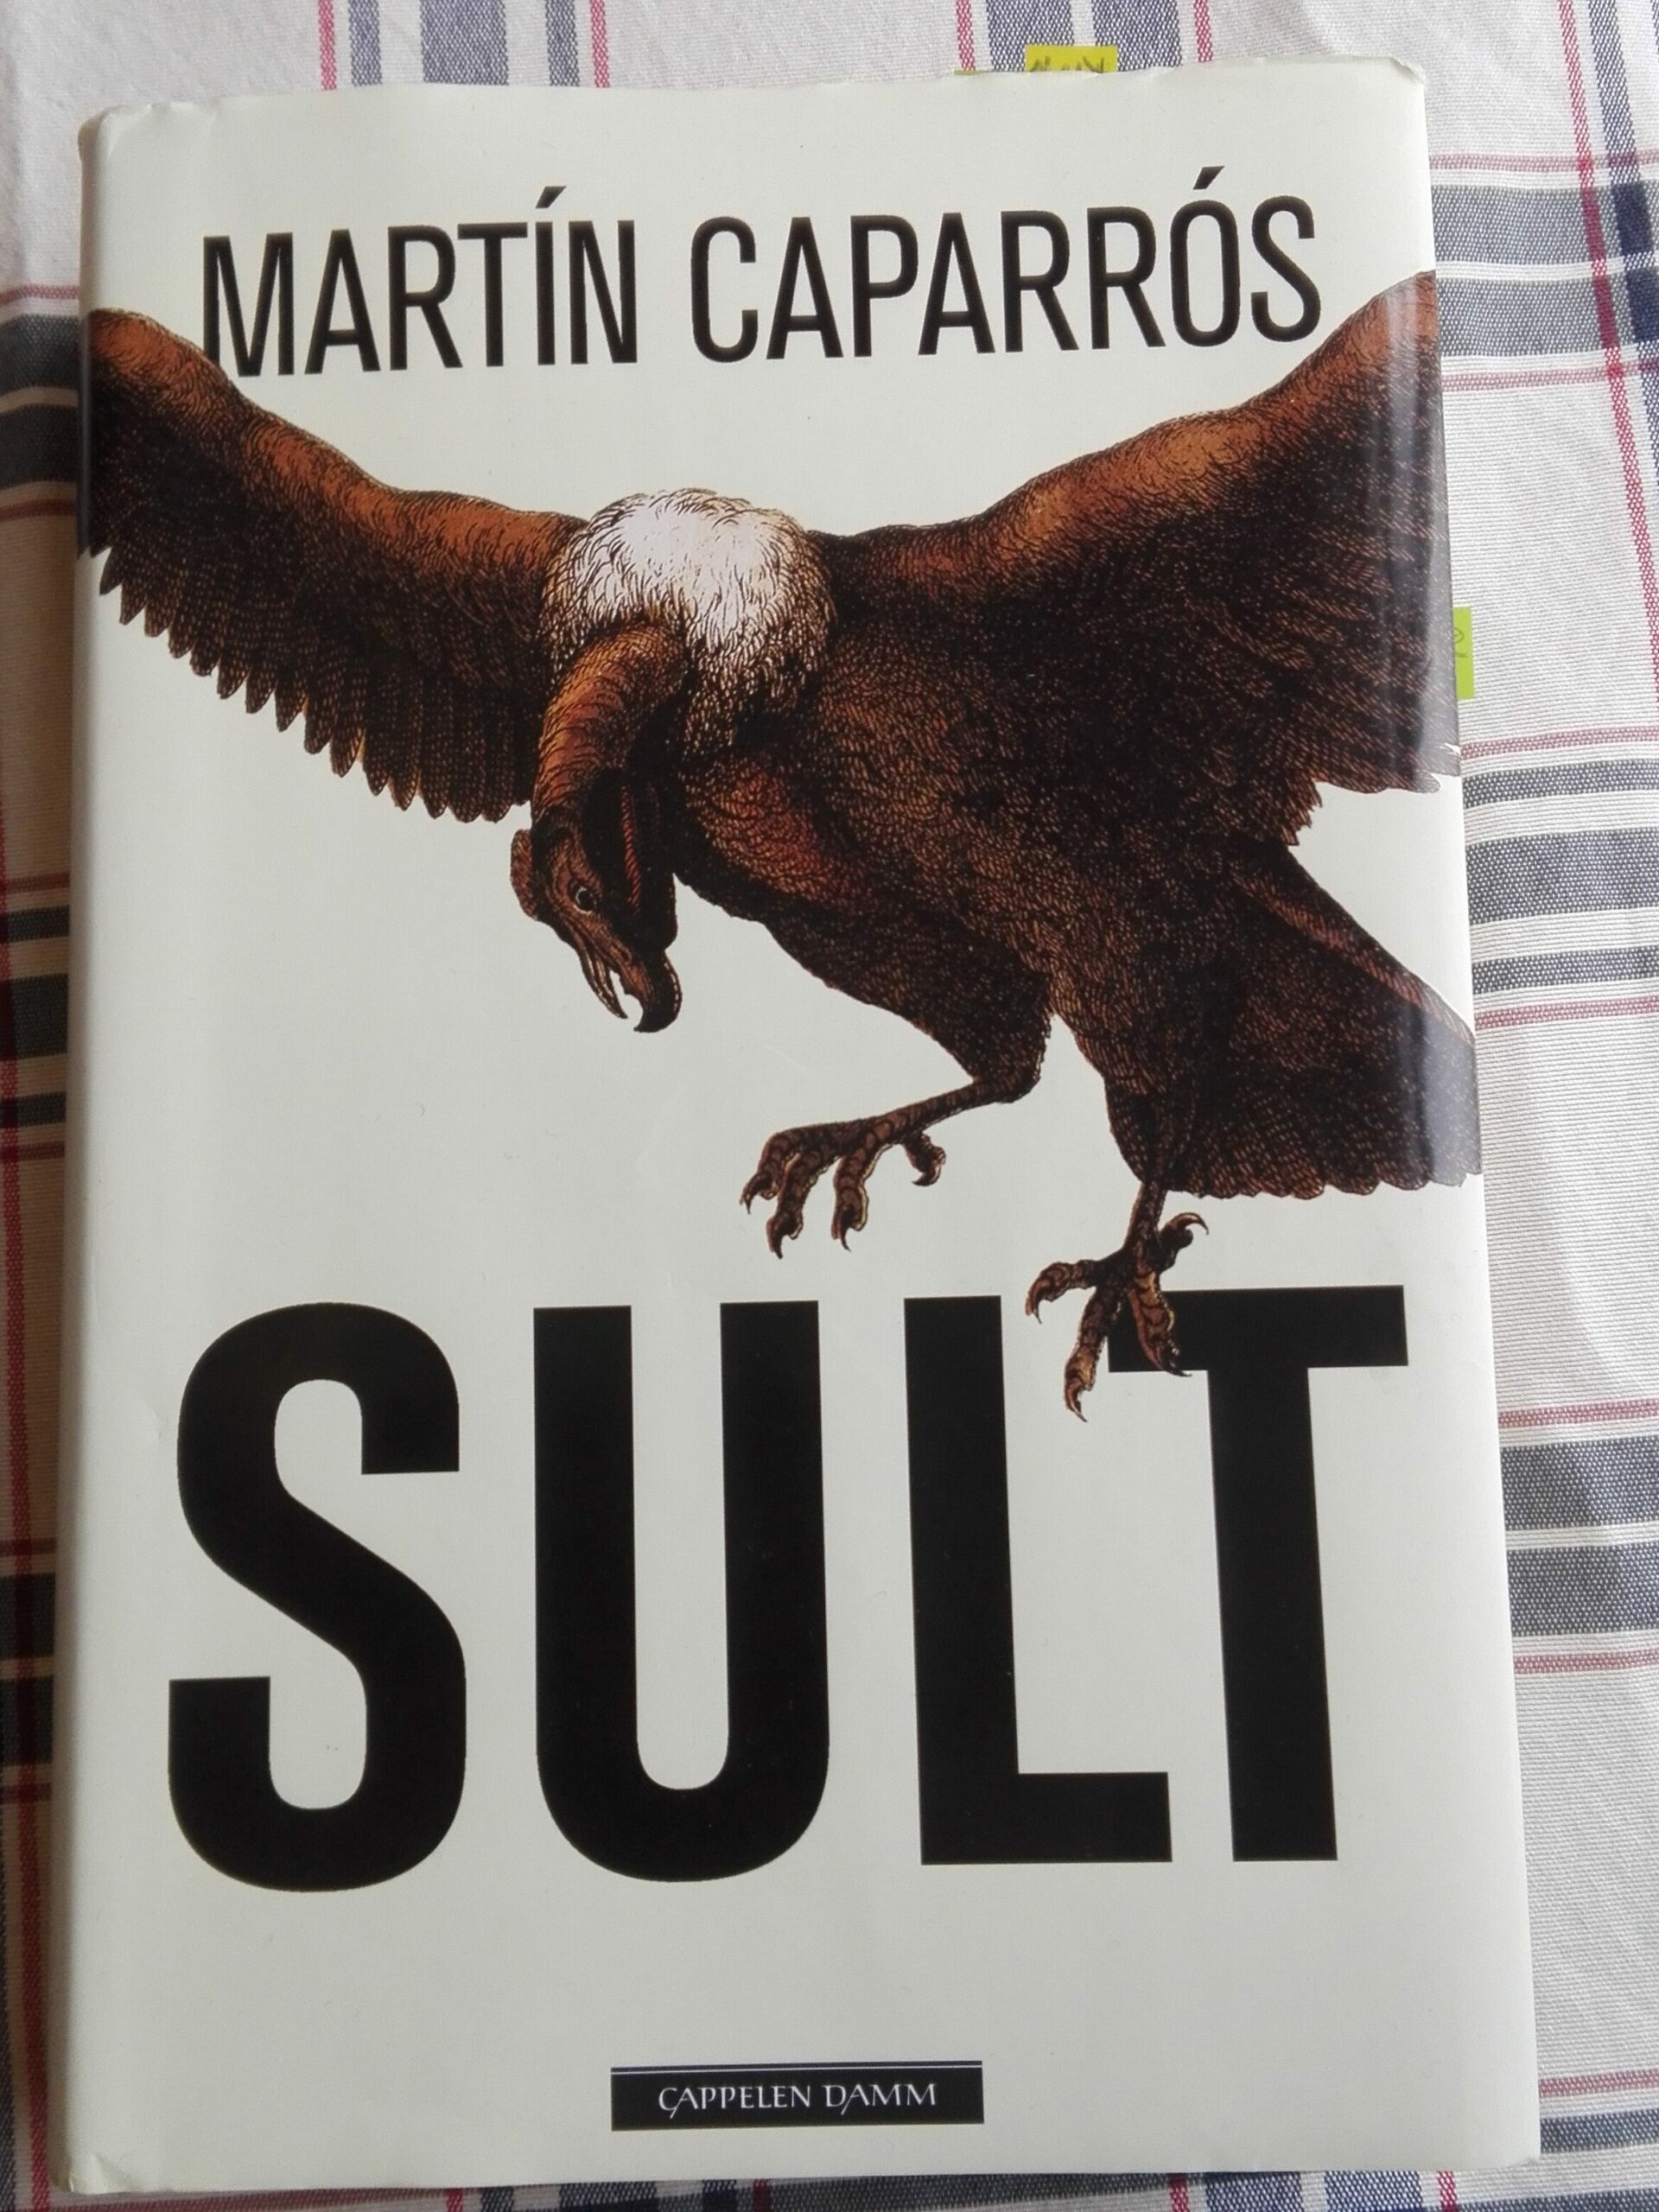 Fotografi av boka Sult av Martín Caparros. Omslaget viser en gribb.